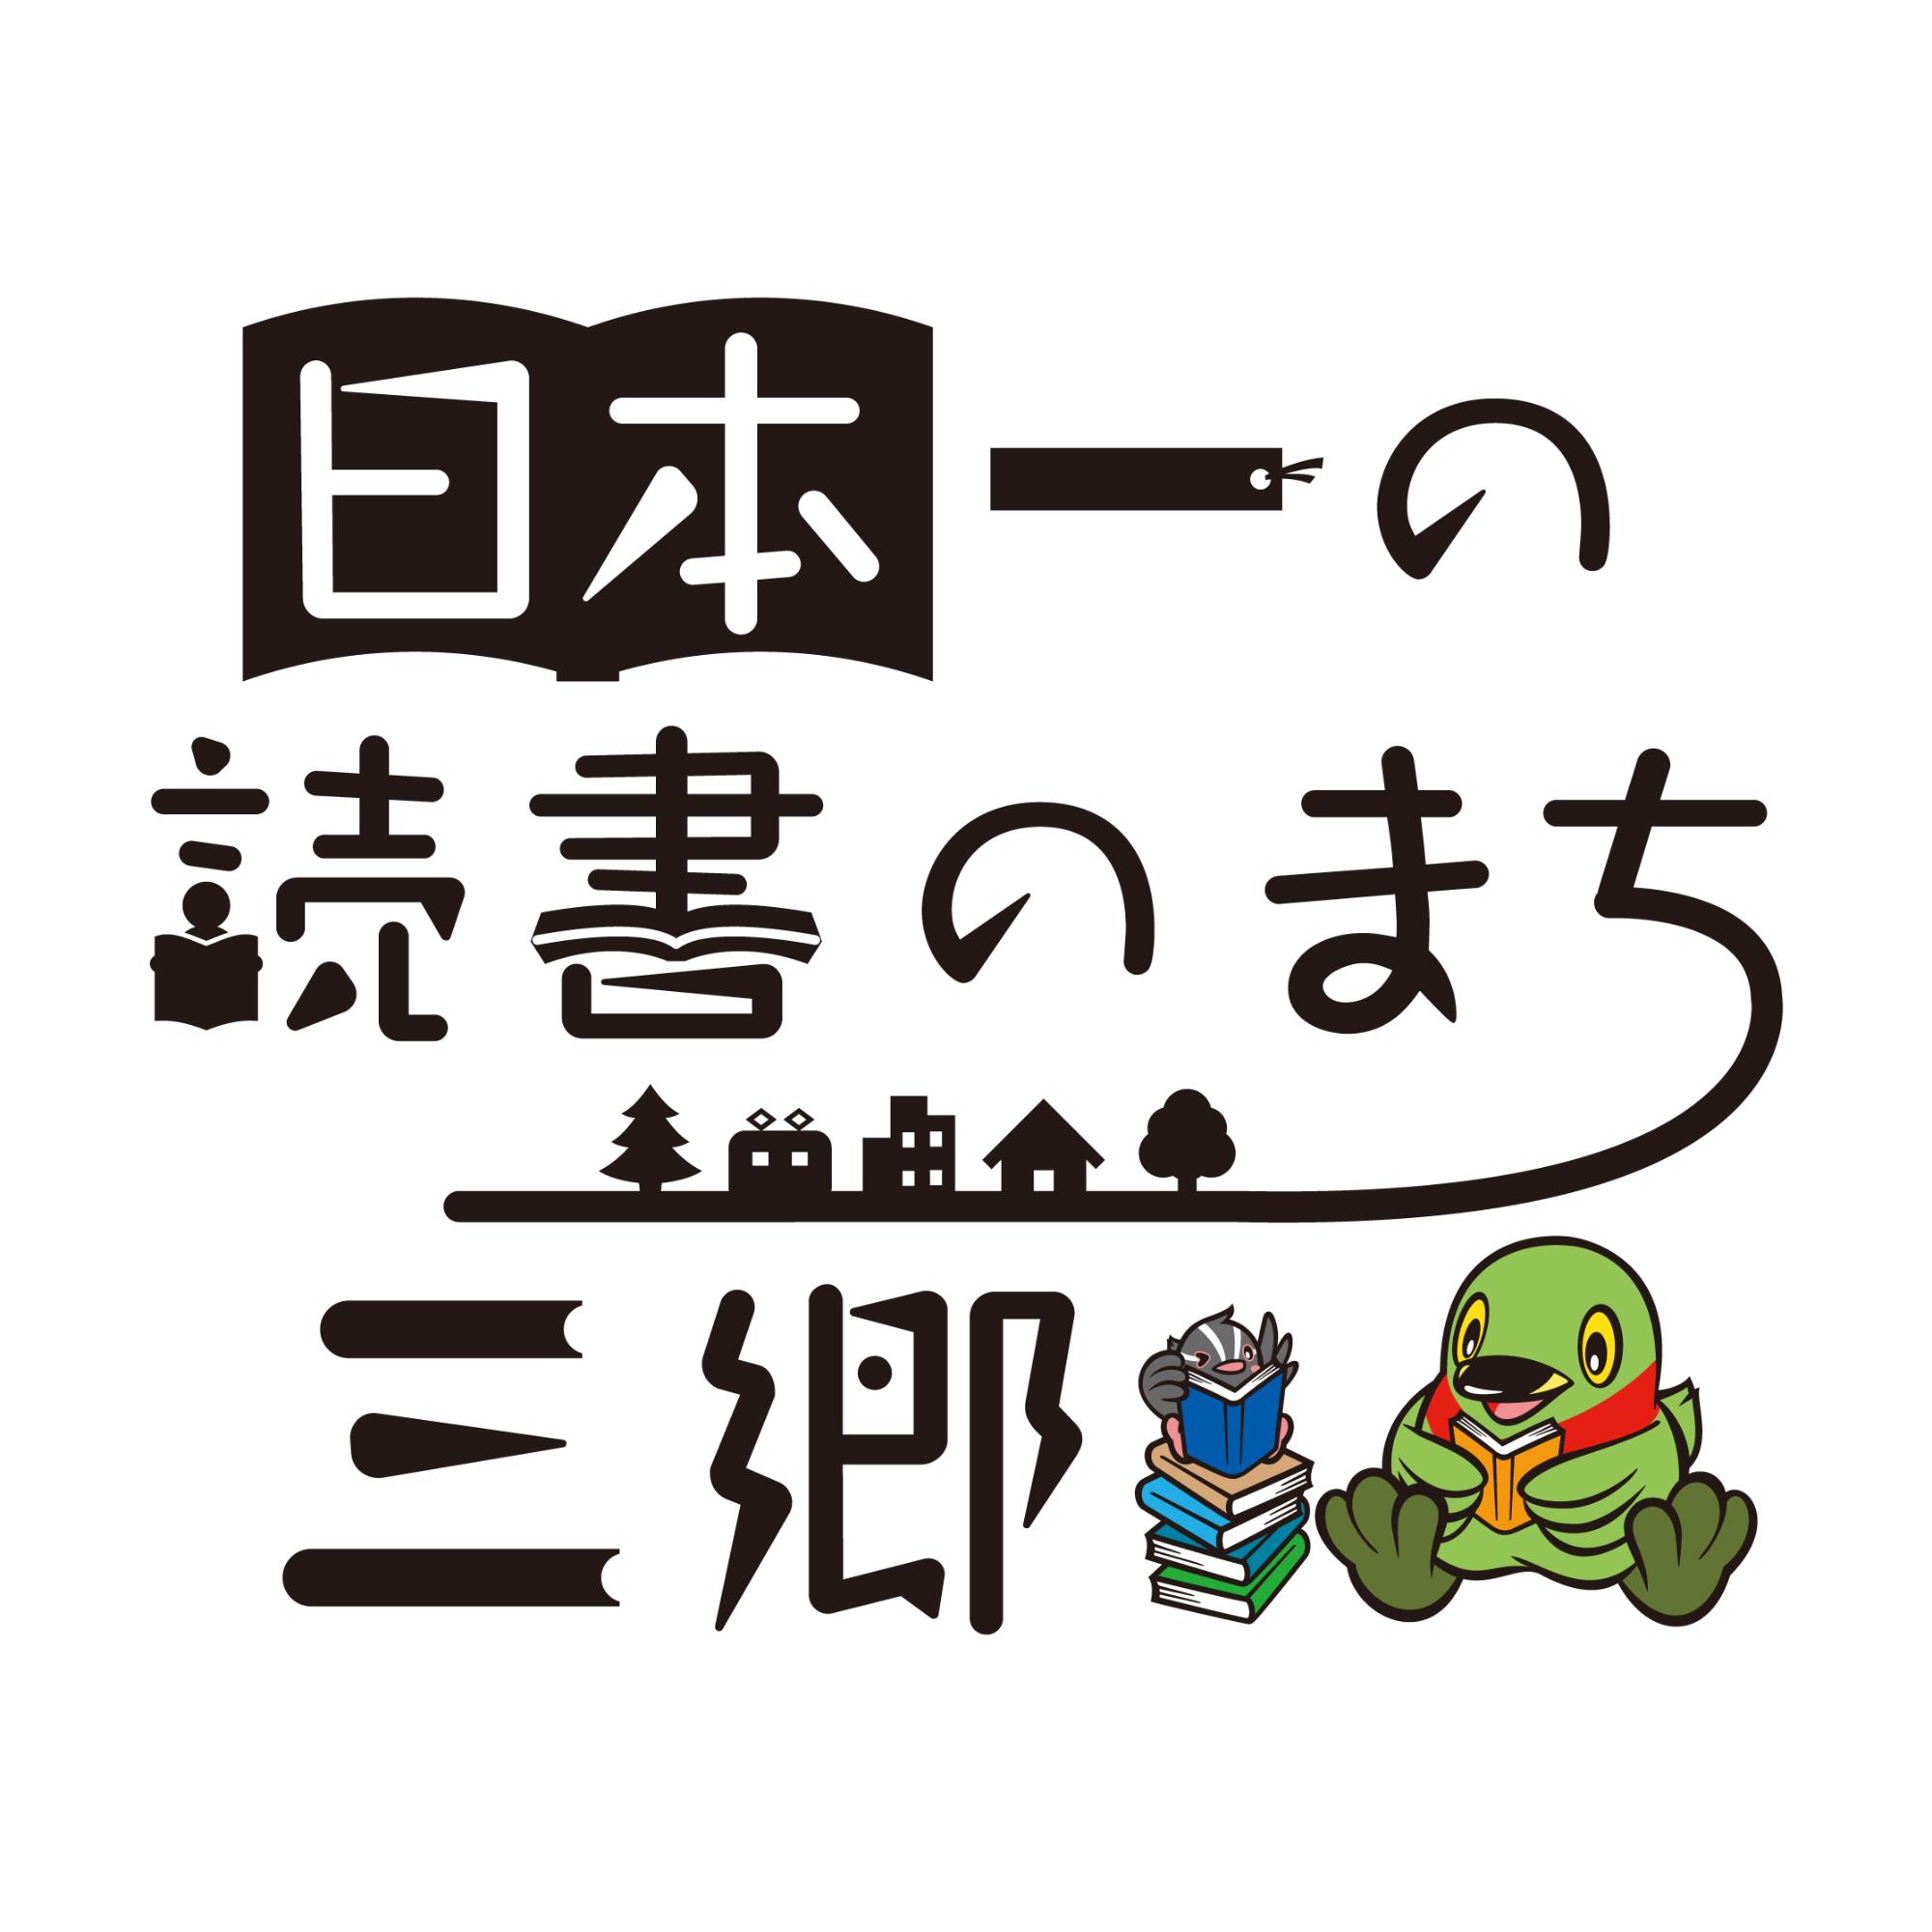 「日本一の読書のまち三郷」と書かれ、かいちゃんが本を読んでいるイラストが入ったロゴマーク